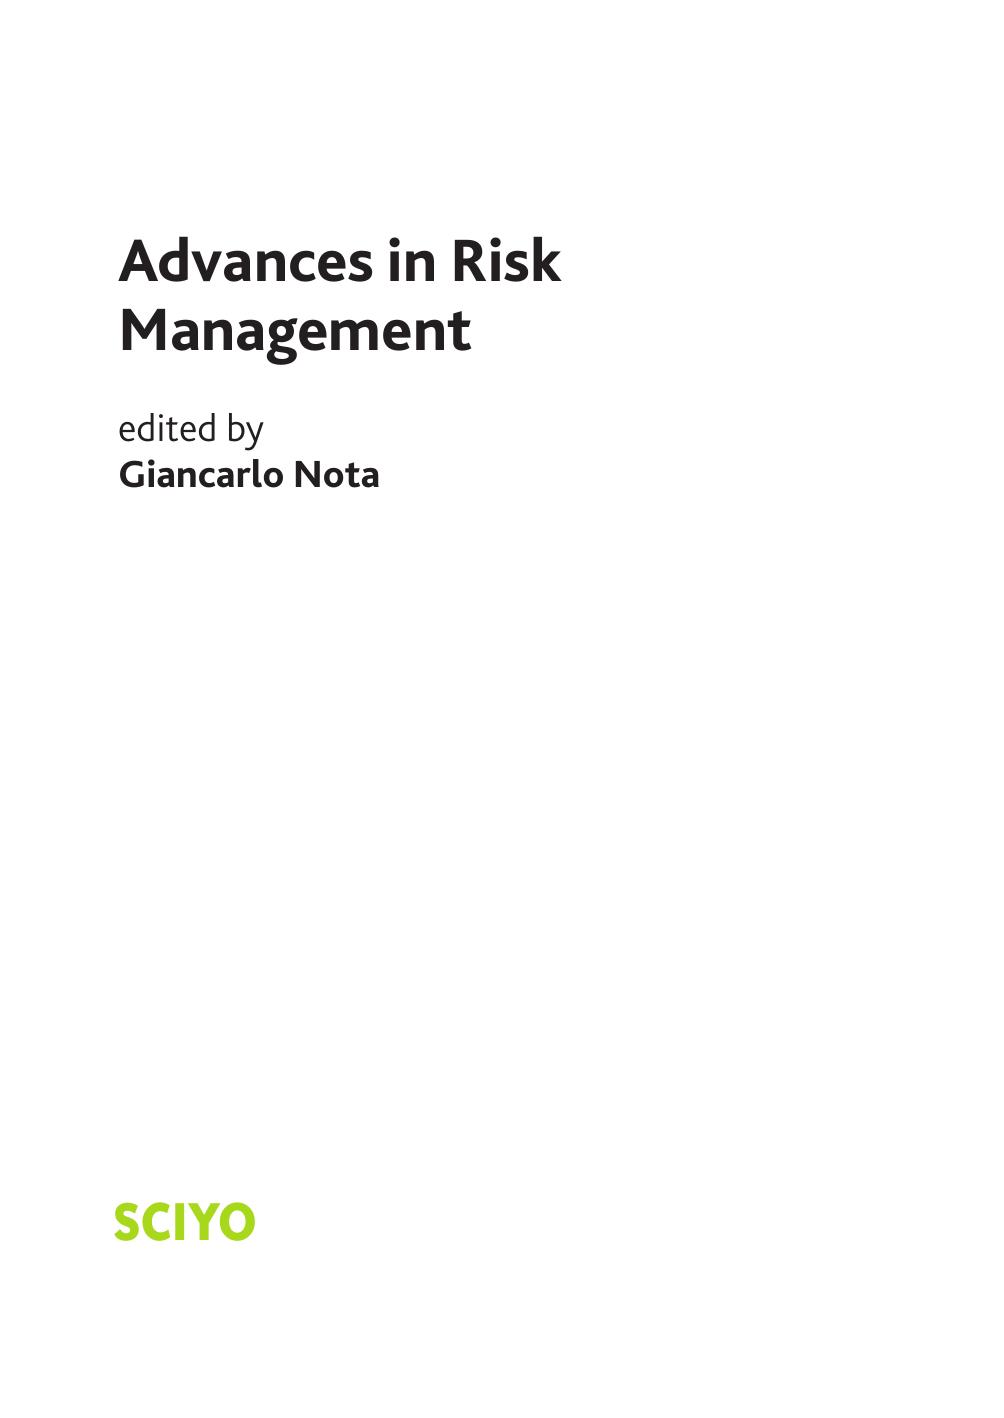 Advances in Risk Management 2010.pdf